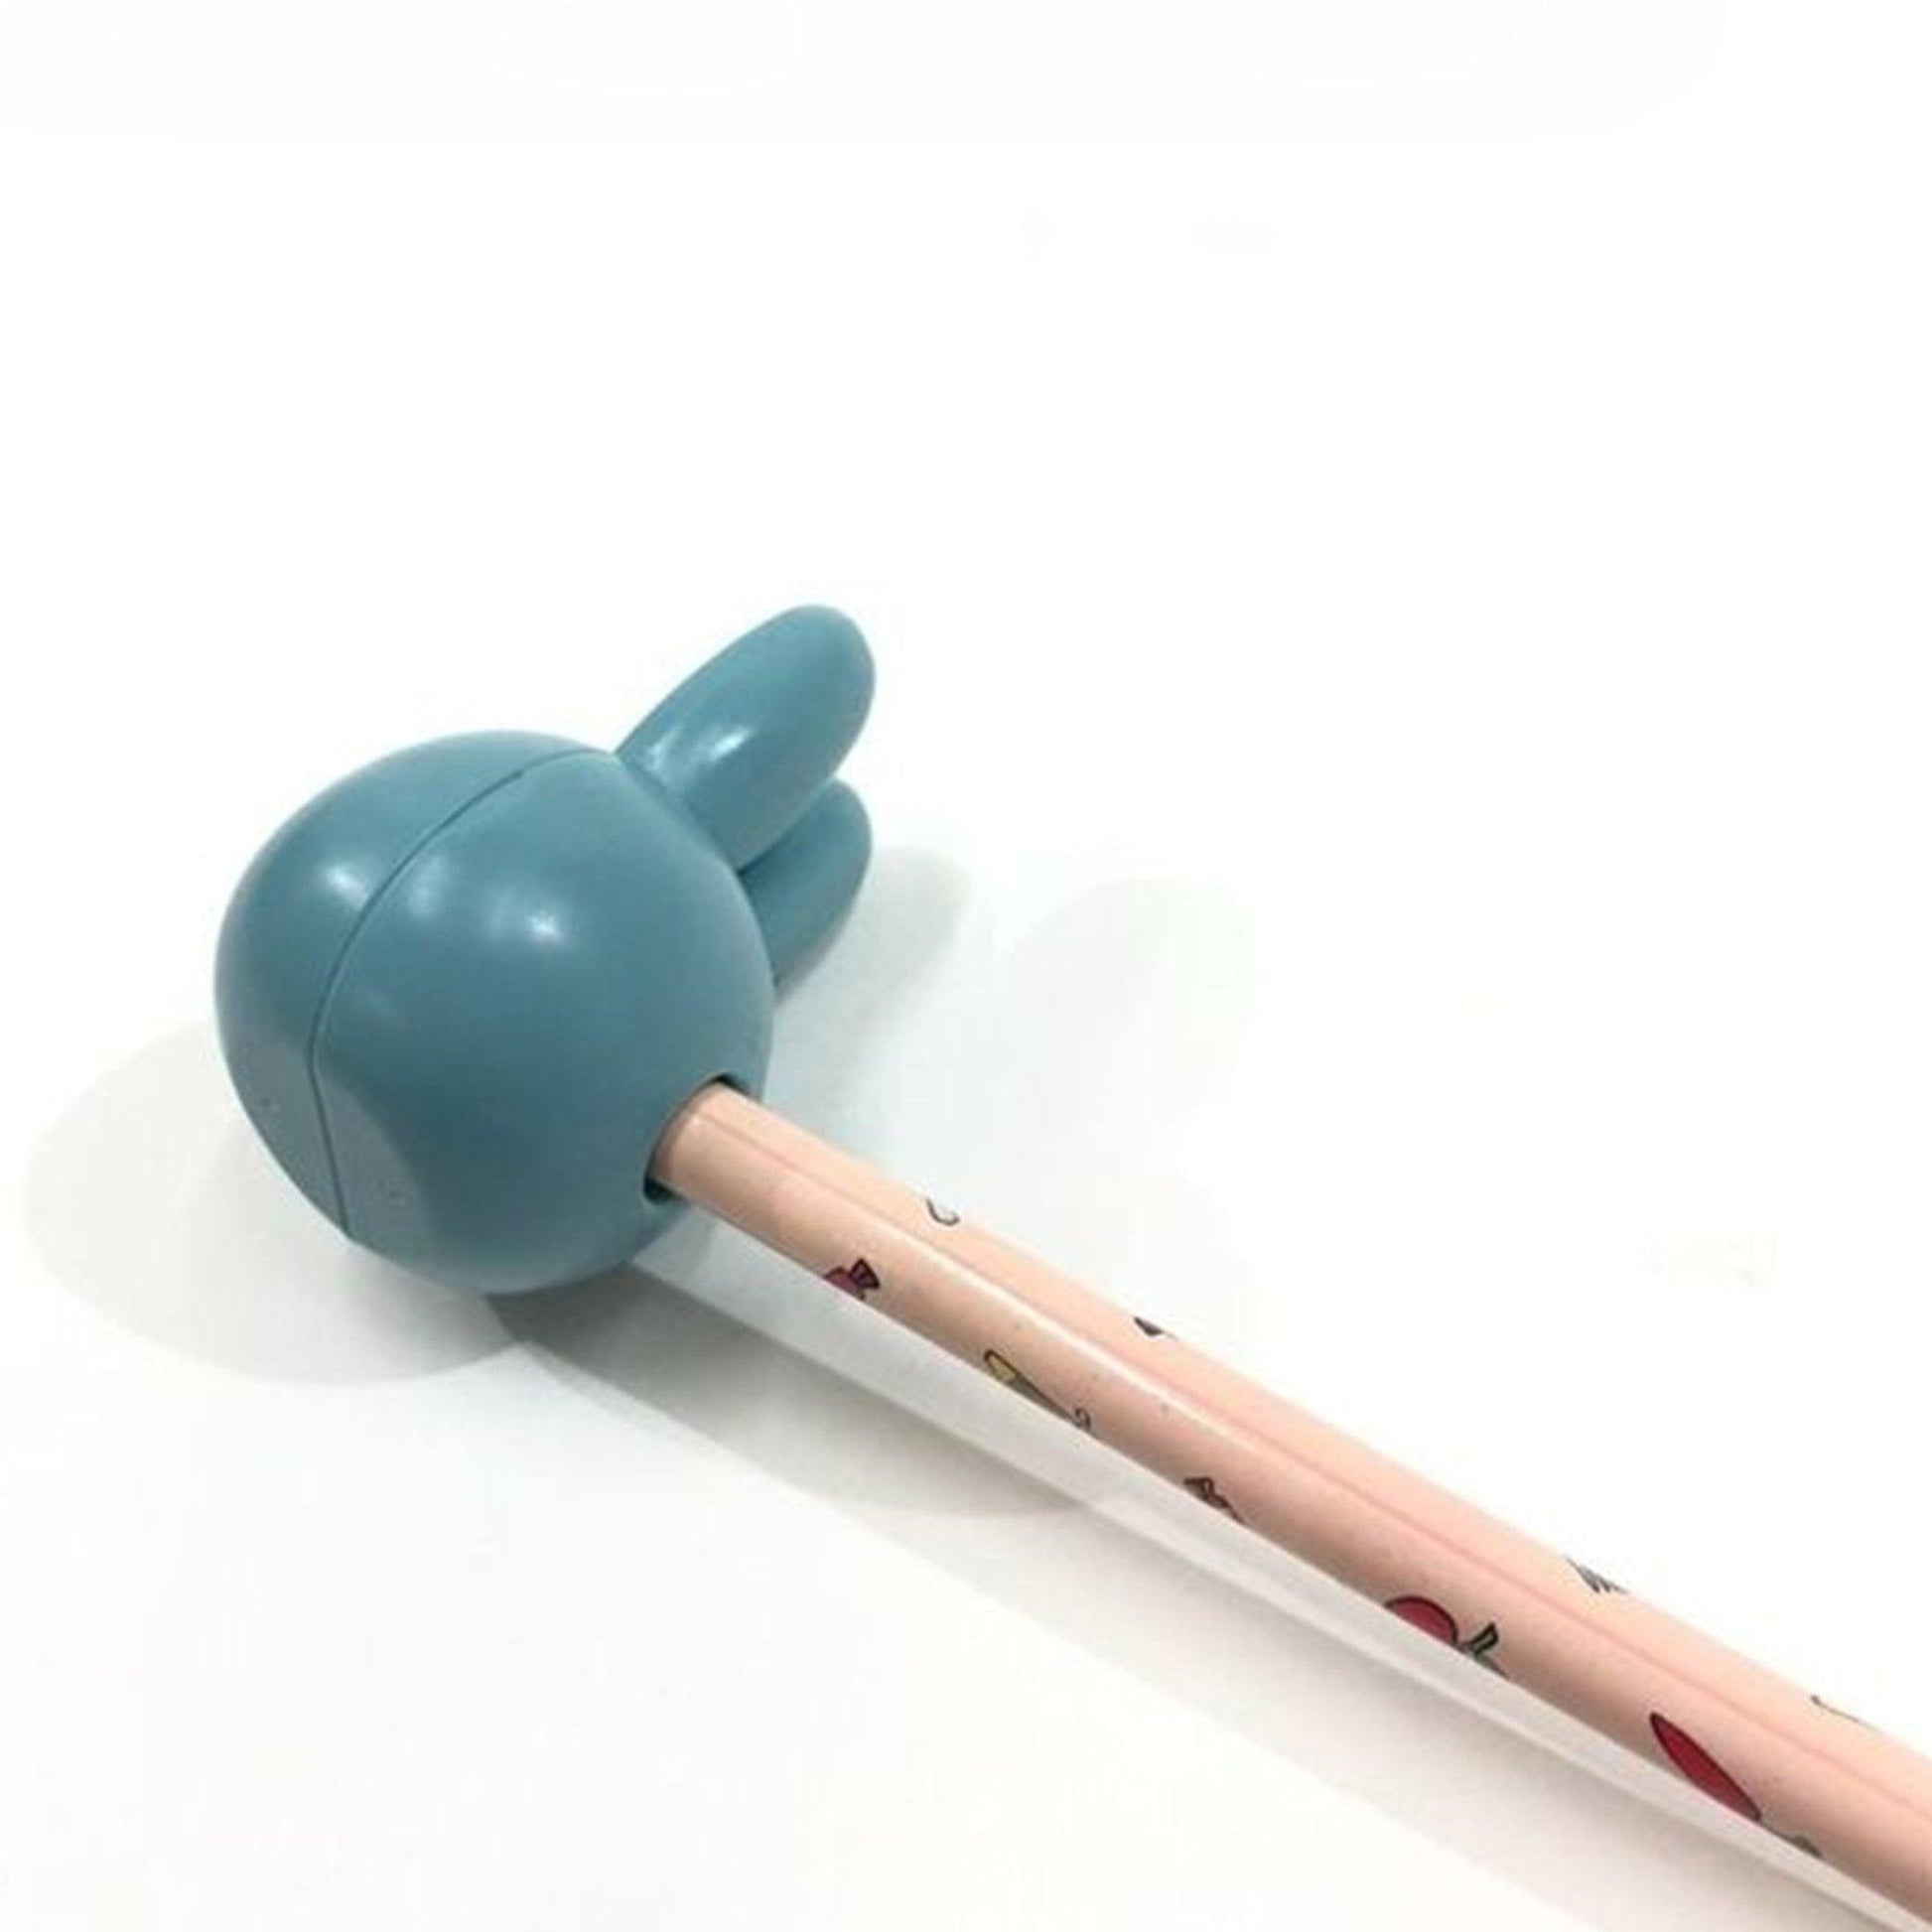 KUTSUWA MF663 miffy independent packaging pencil sharpener shape pencil sharpener random shipment - CHL-STORE 